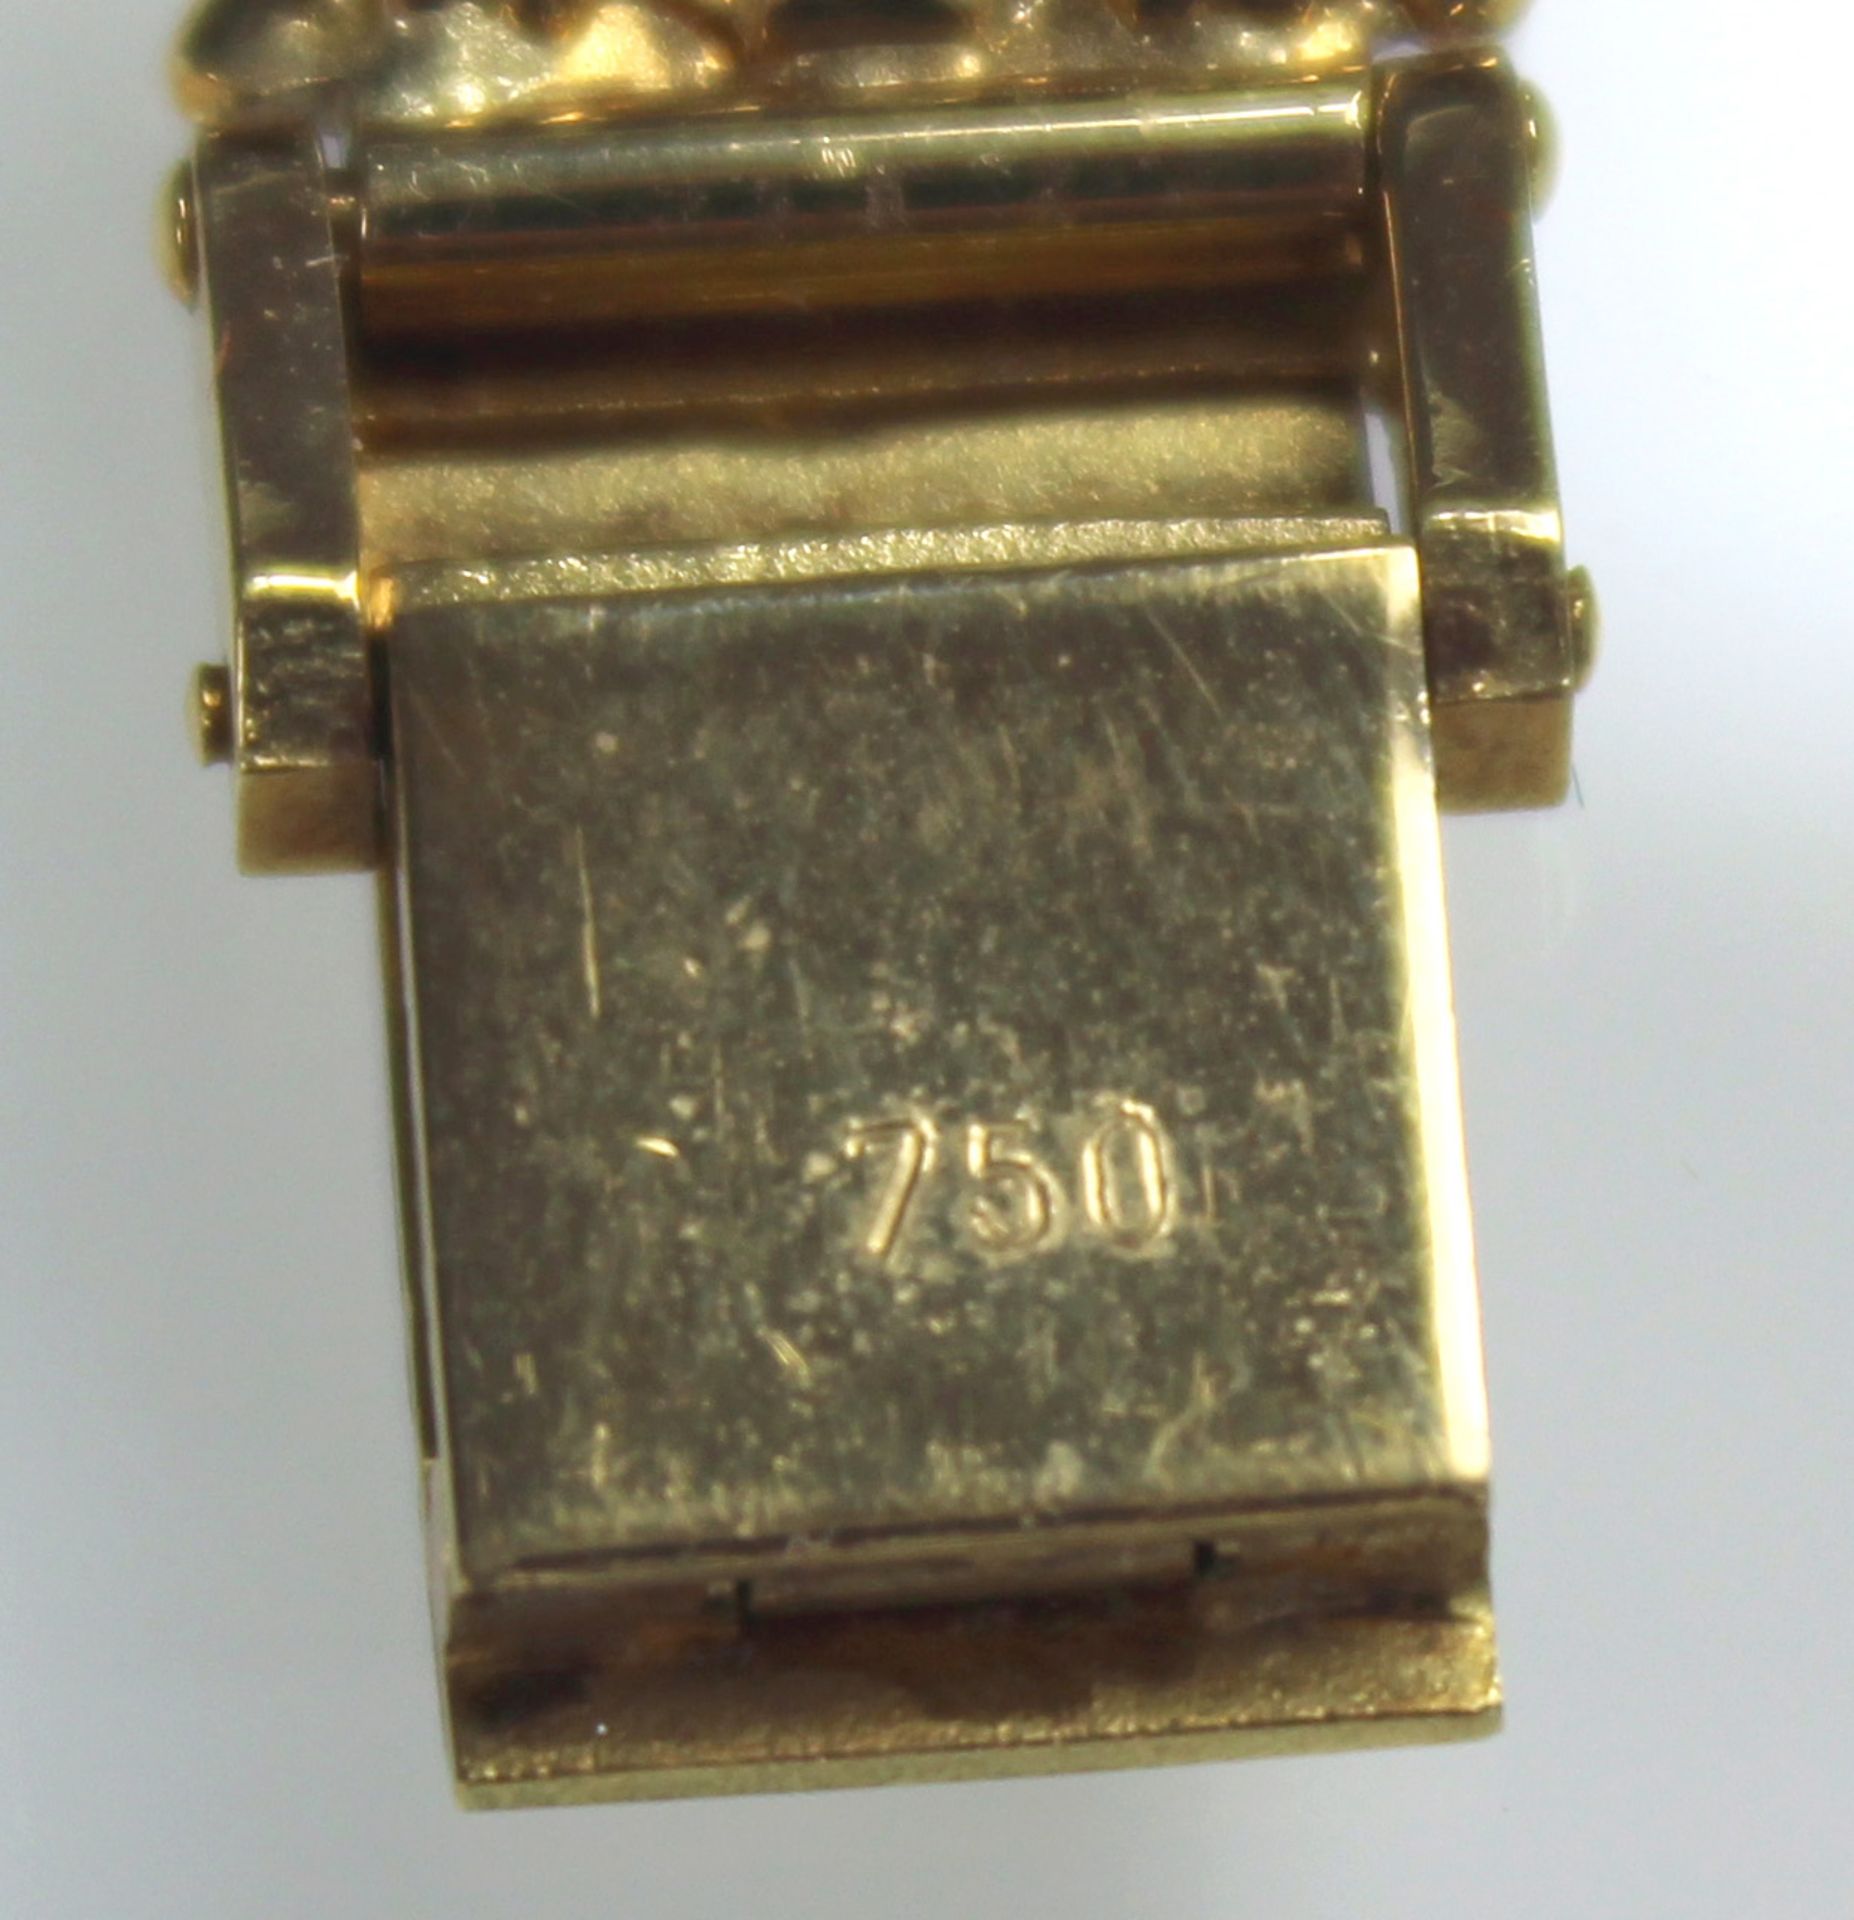 Schmuck Armbanduhr Gelb Gold 750, besetzt mit 36 kleinen Brillanten.58,5 Gramm Gesamtgewicht. - Bild 9 aus 11